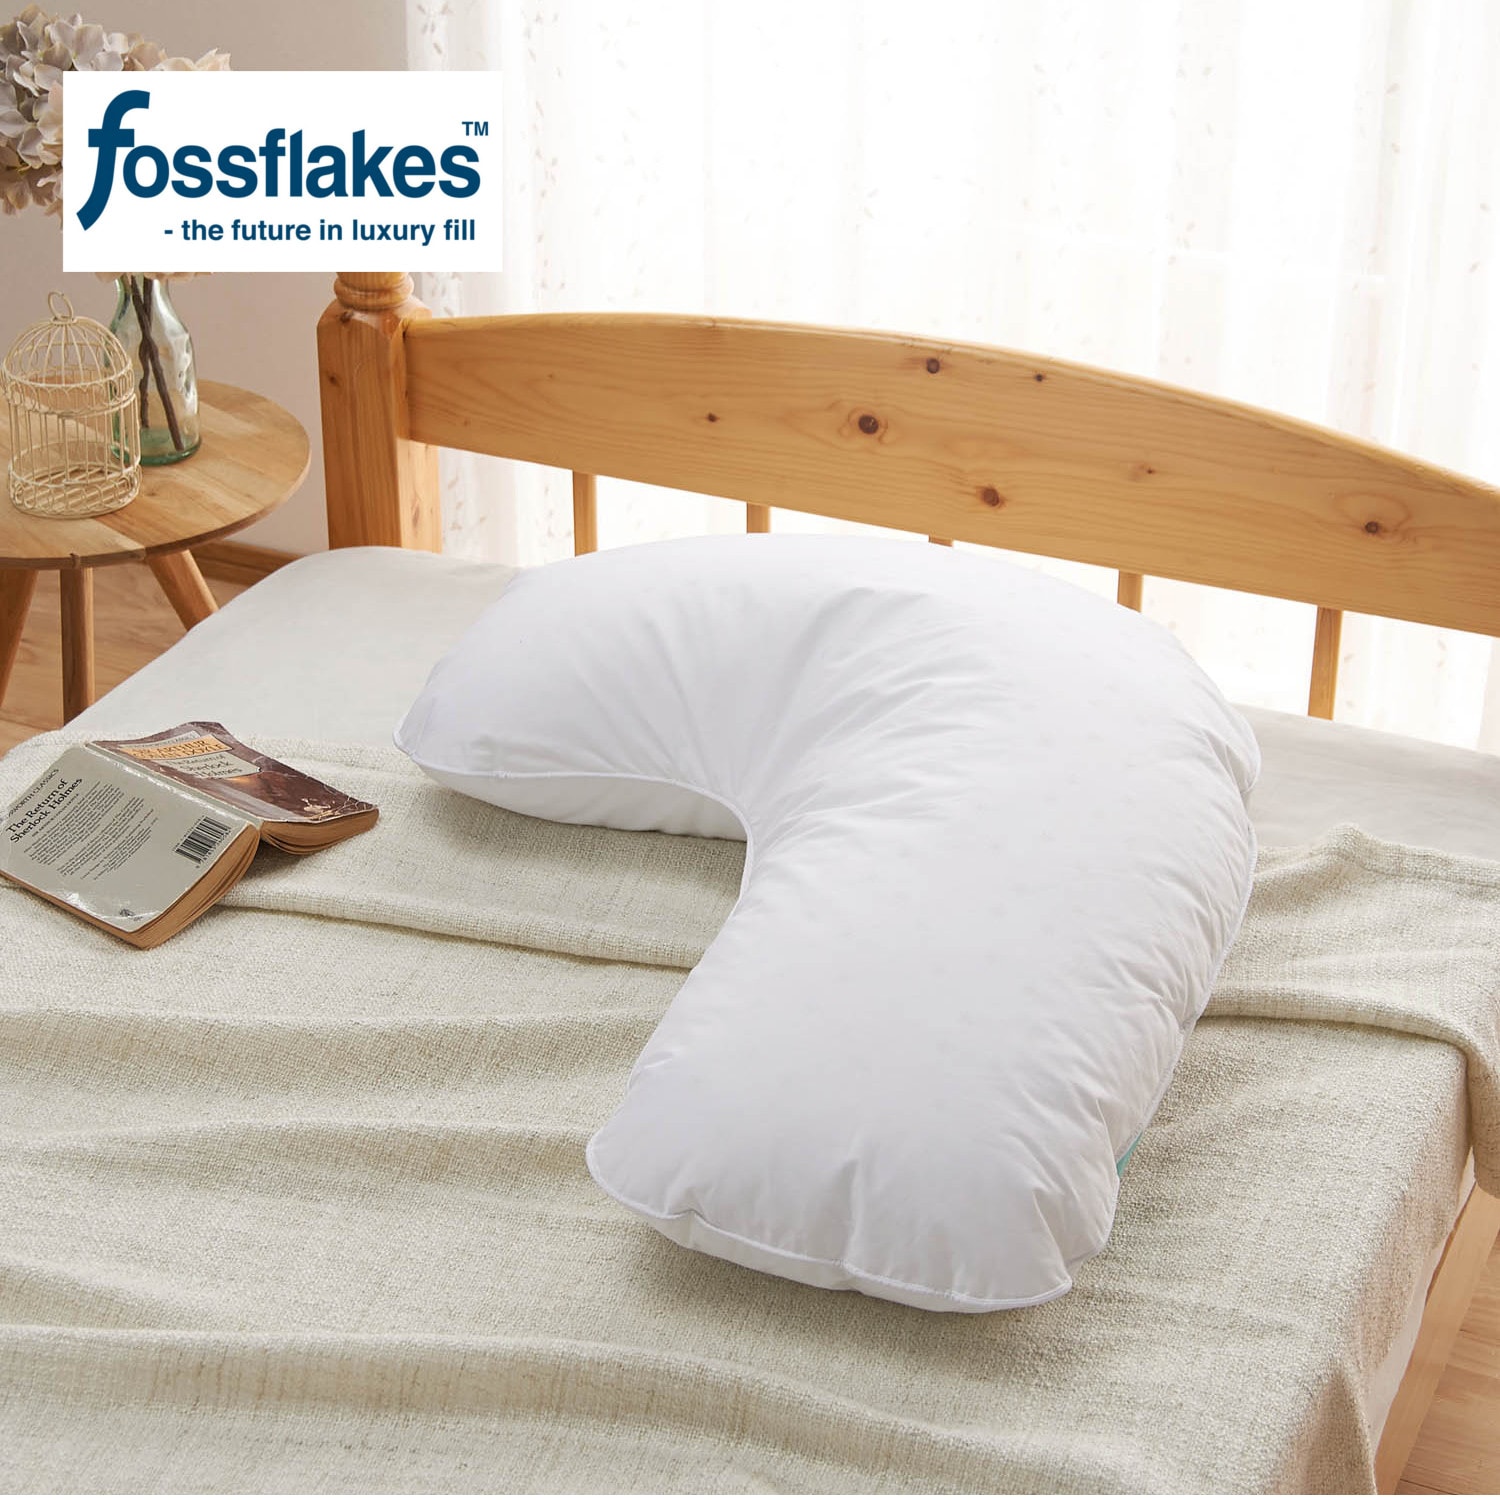 安価 ワタナベ ホワイト 横向き寝用枕 枕 56×66×27cm ホワイト フォス